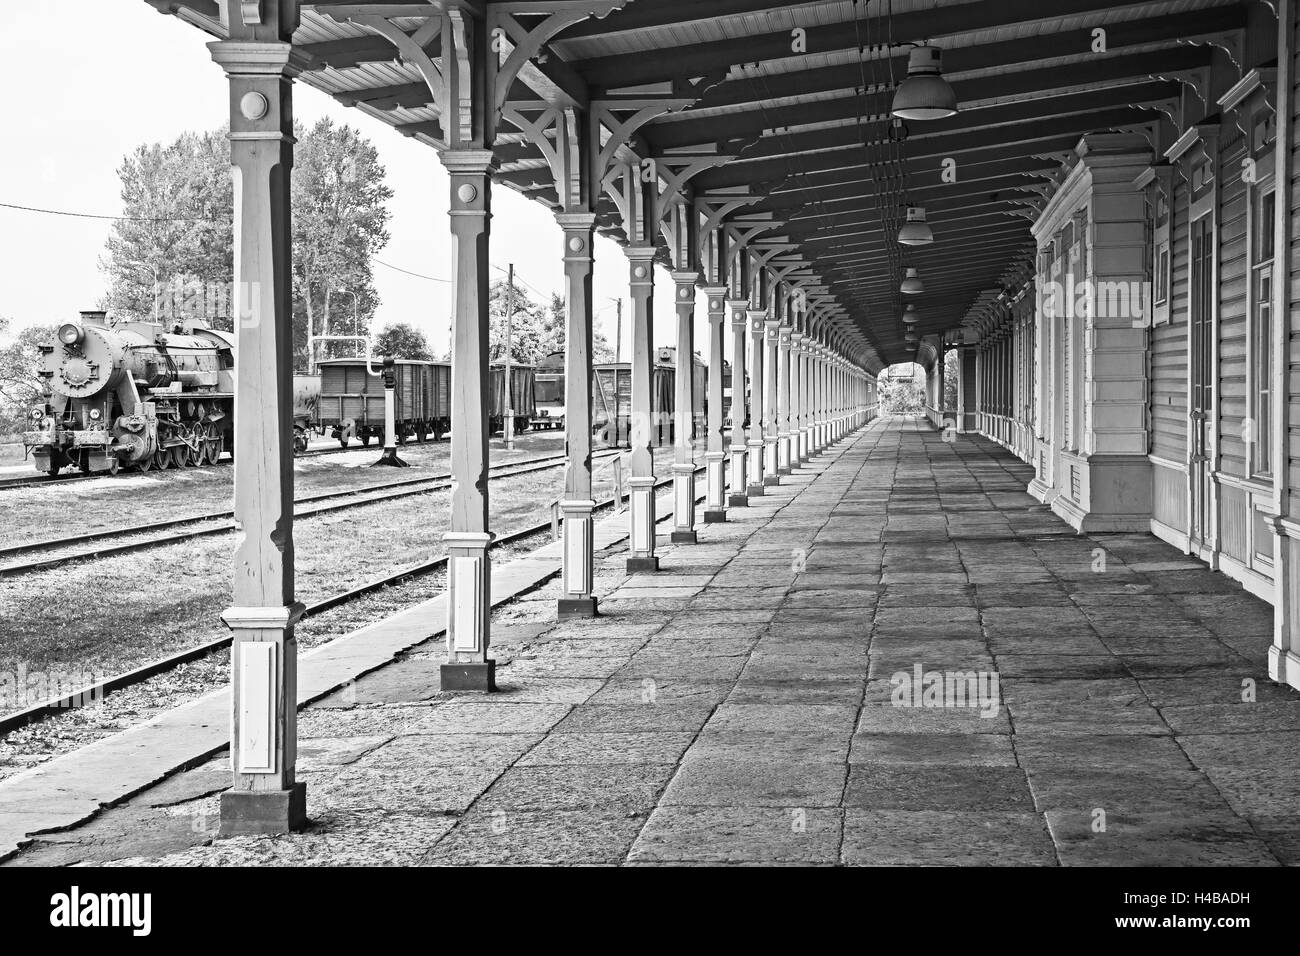 Railway station in Haapsalu, Estonia Stock Photo